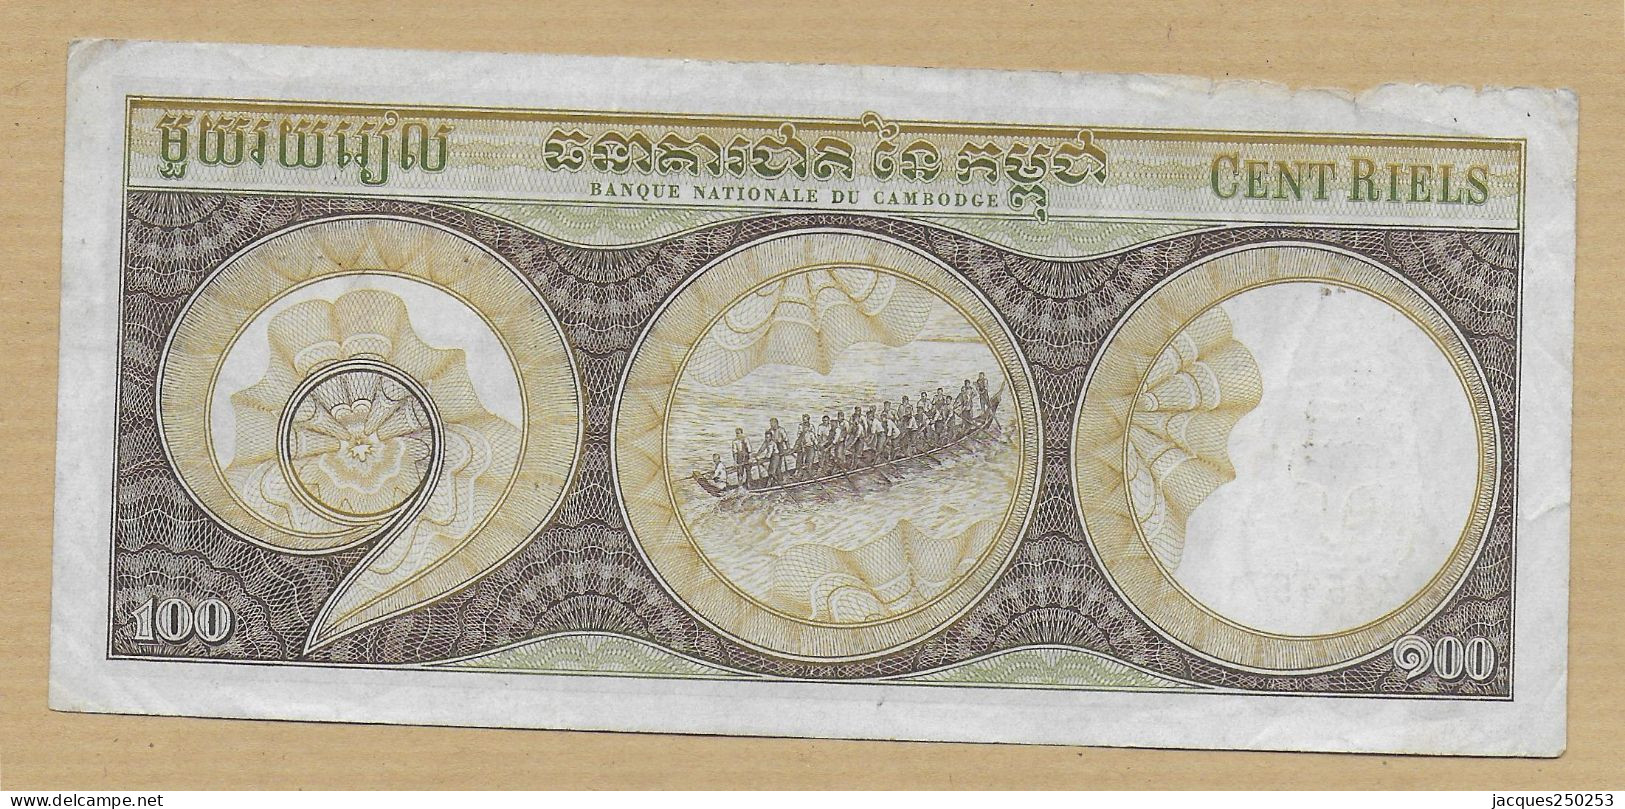 100 Riels Cambodge - Cambodge